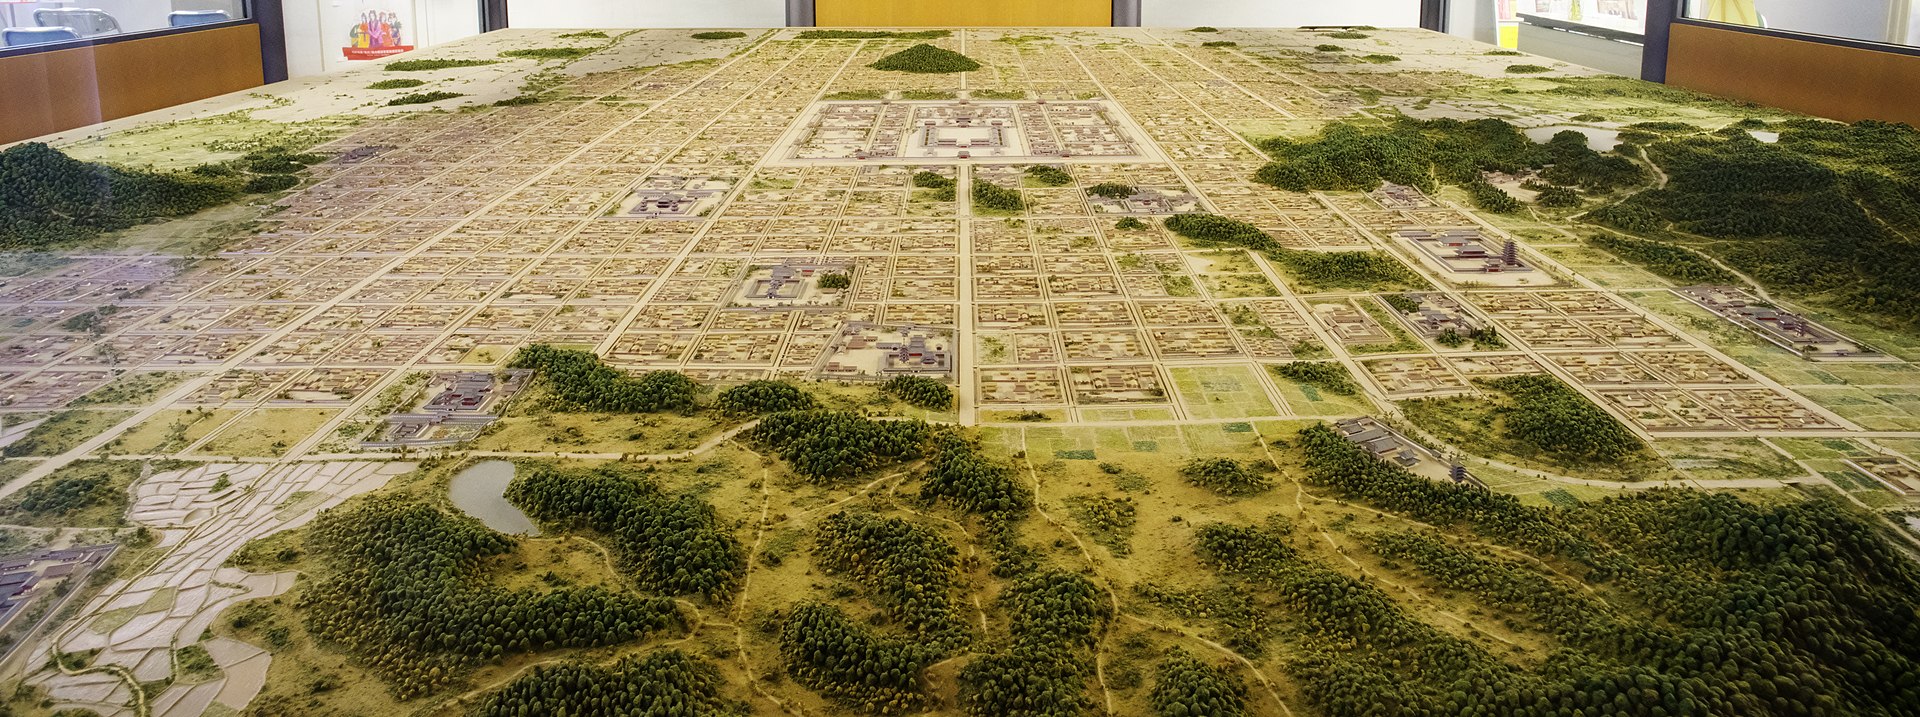 藤原京の復元模型（橿原市藤原京資料室所蔵）。南側から見る